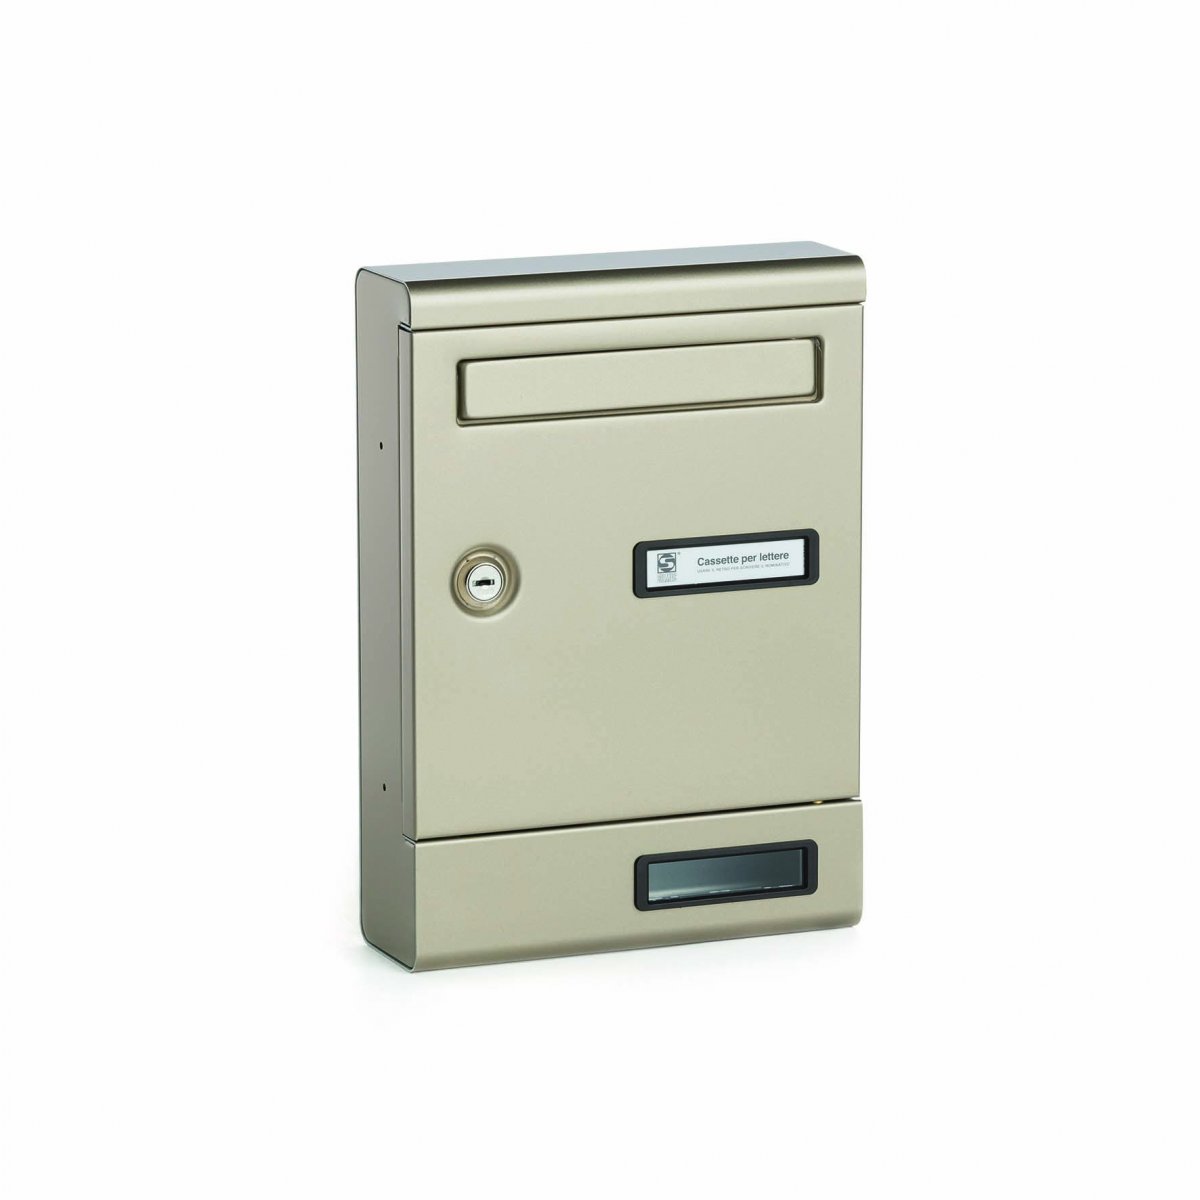 Cassetta postale singola o multipla, economica e poco ingombrante alluminio colore bronzo